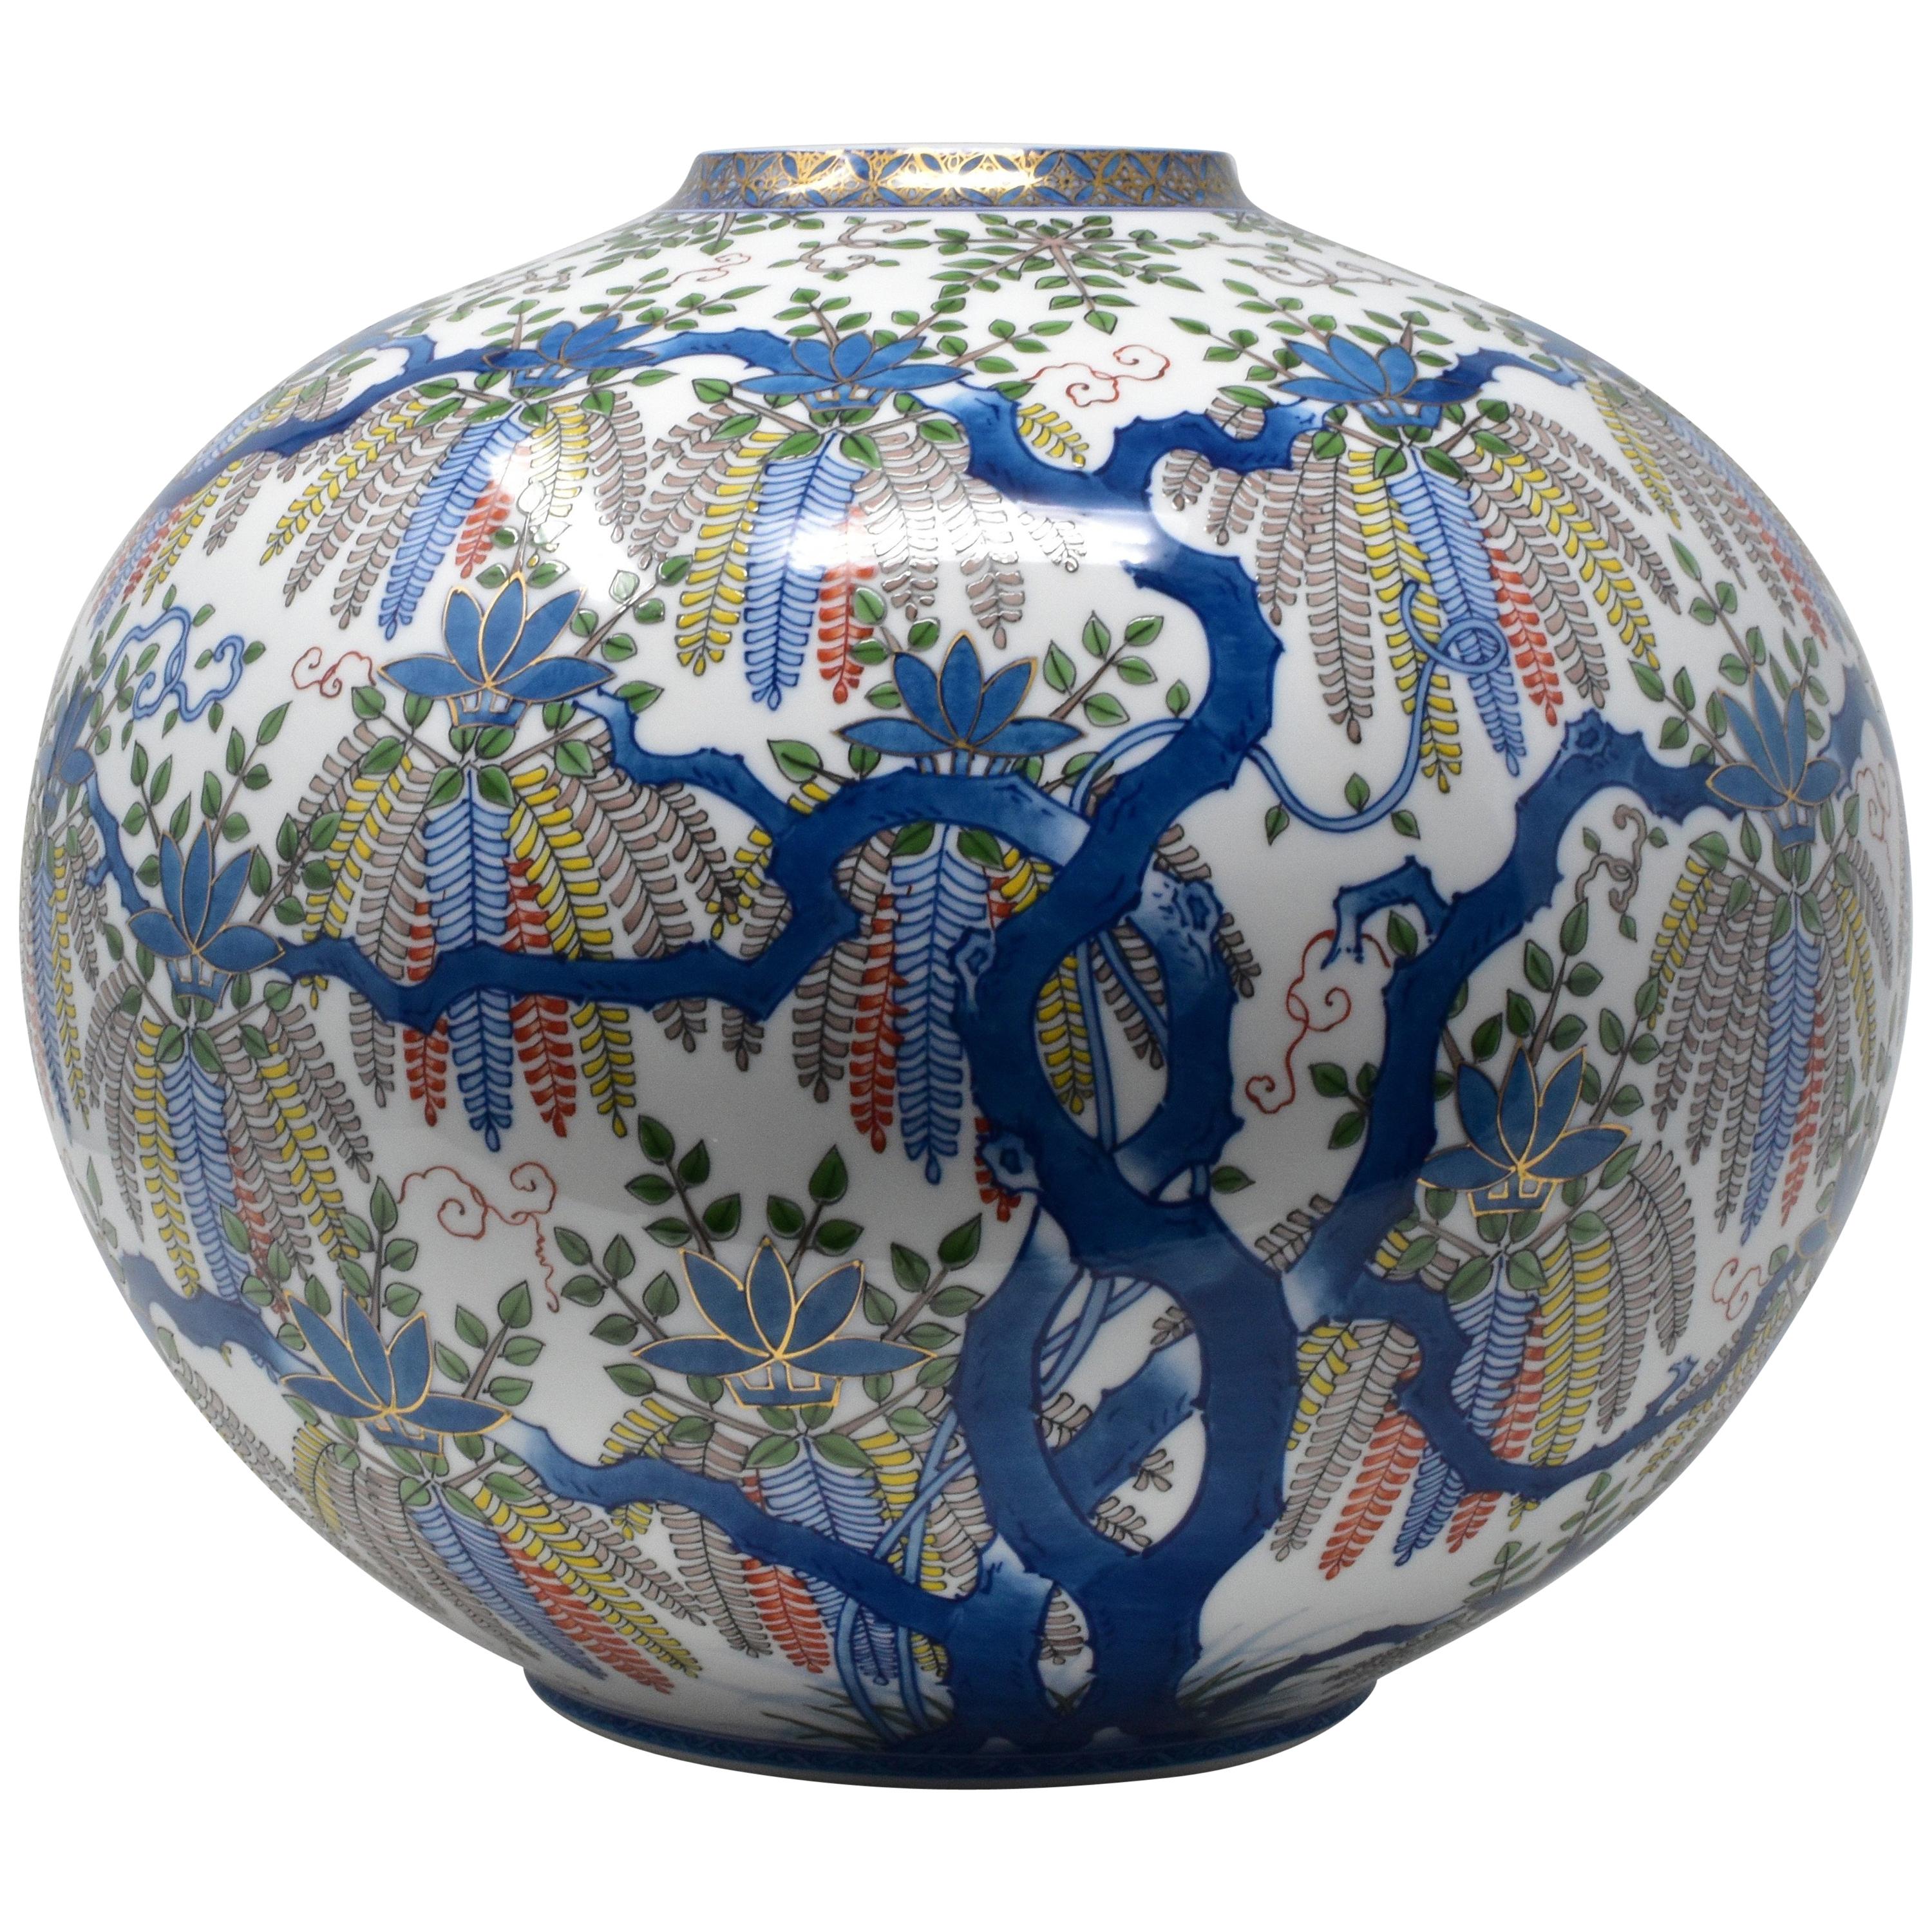 Vase contemporain japonais en porcelaine bleue, verte et jaune, réalisé par un maître artiste, 2